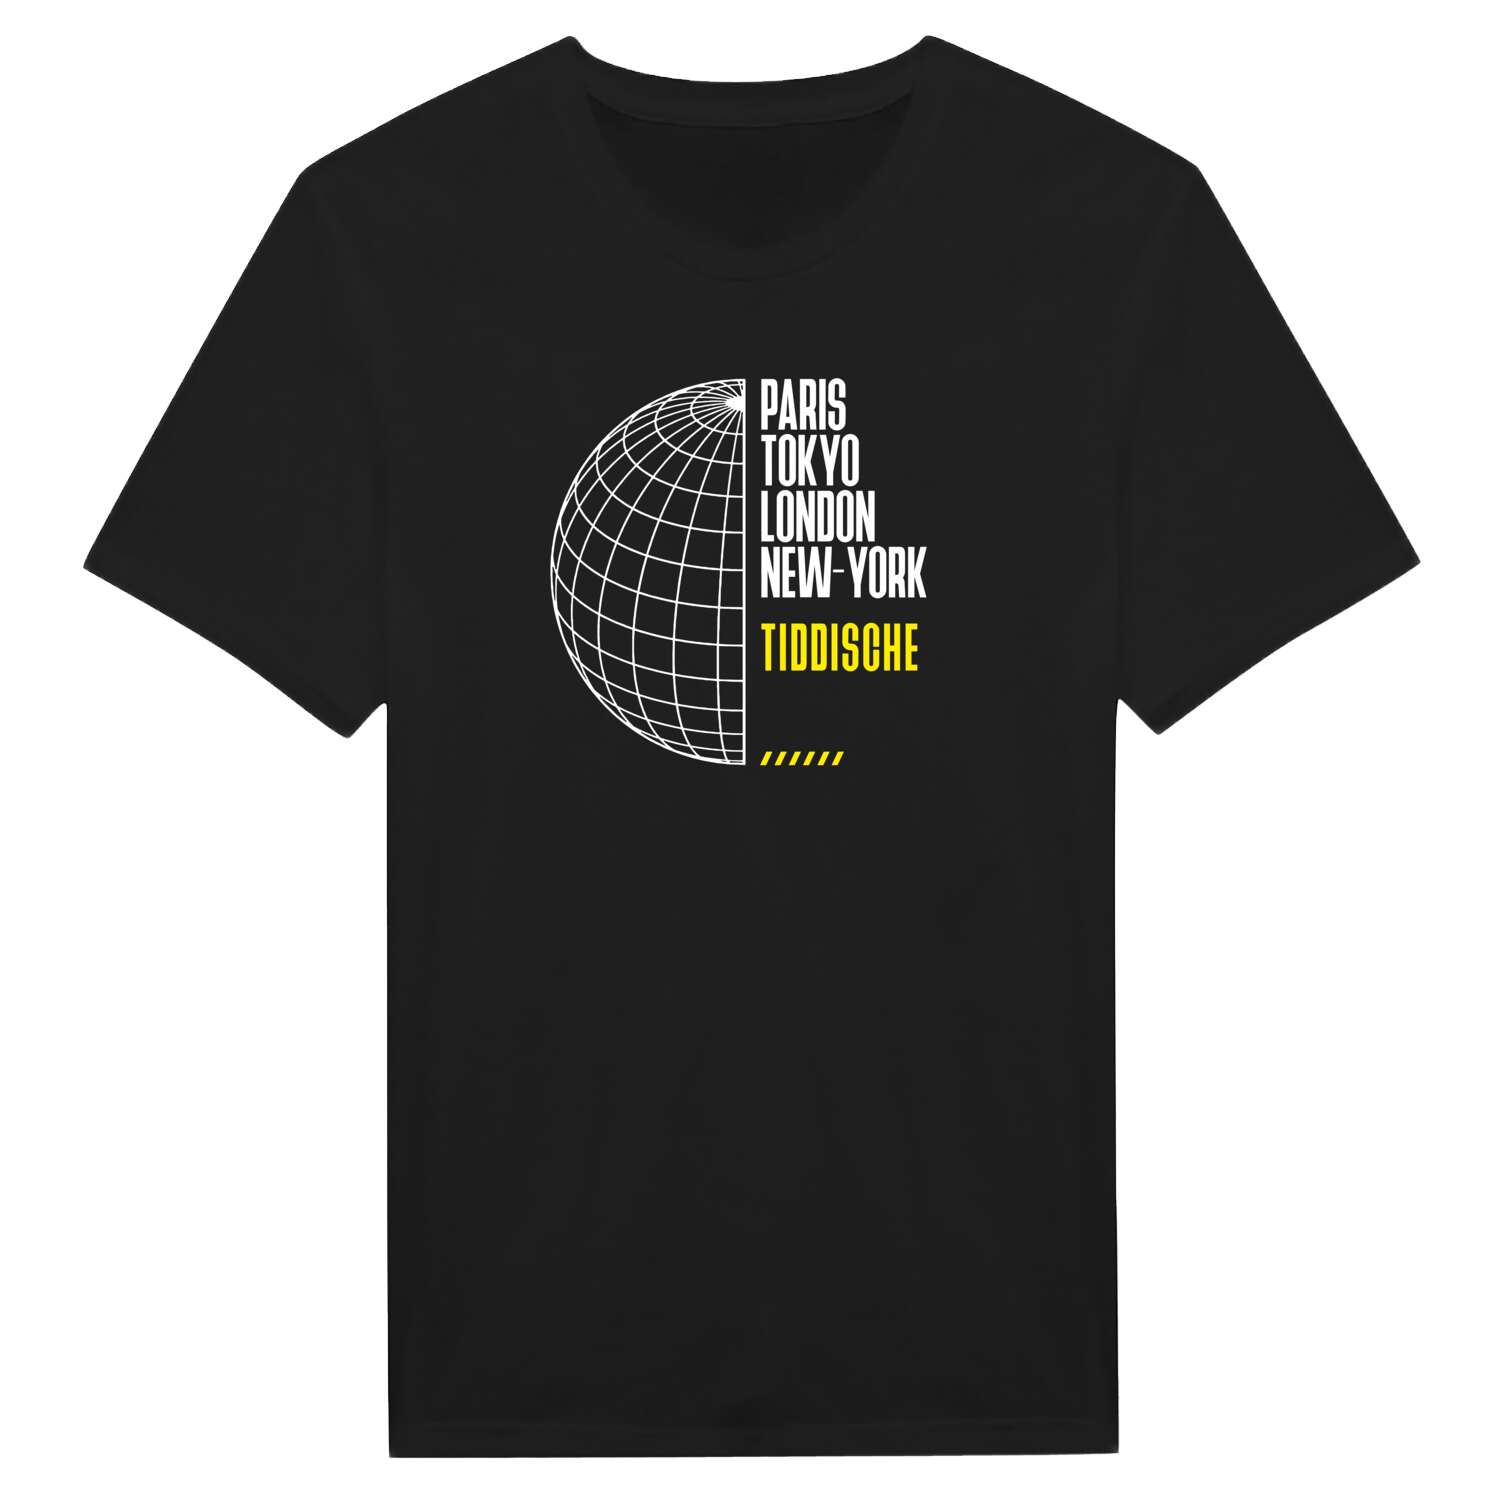 Tiddische T-Shirt »Paris Tokyo London«